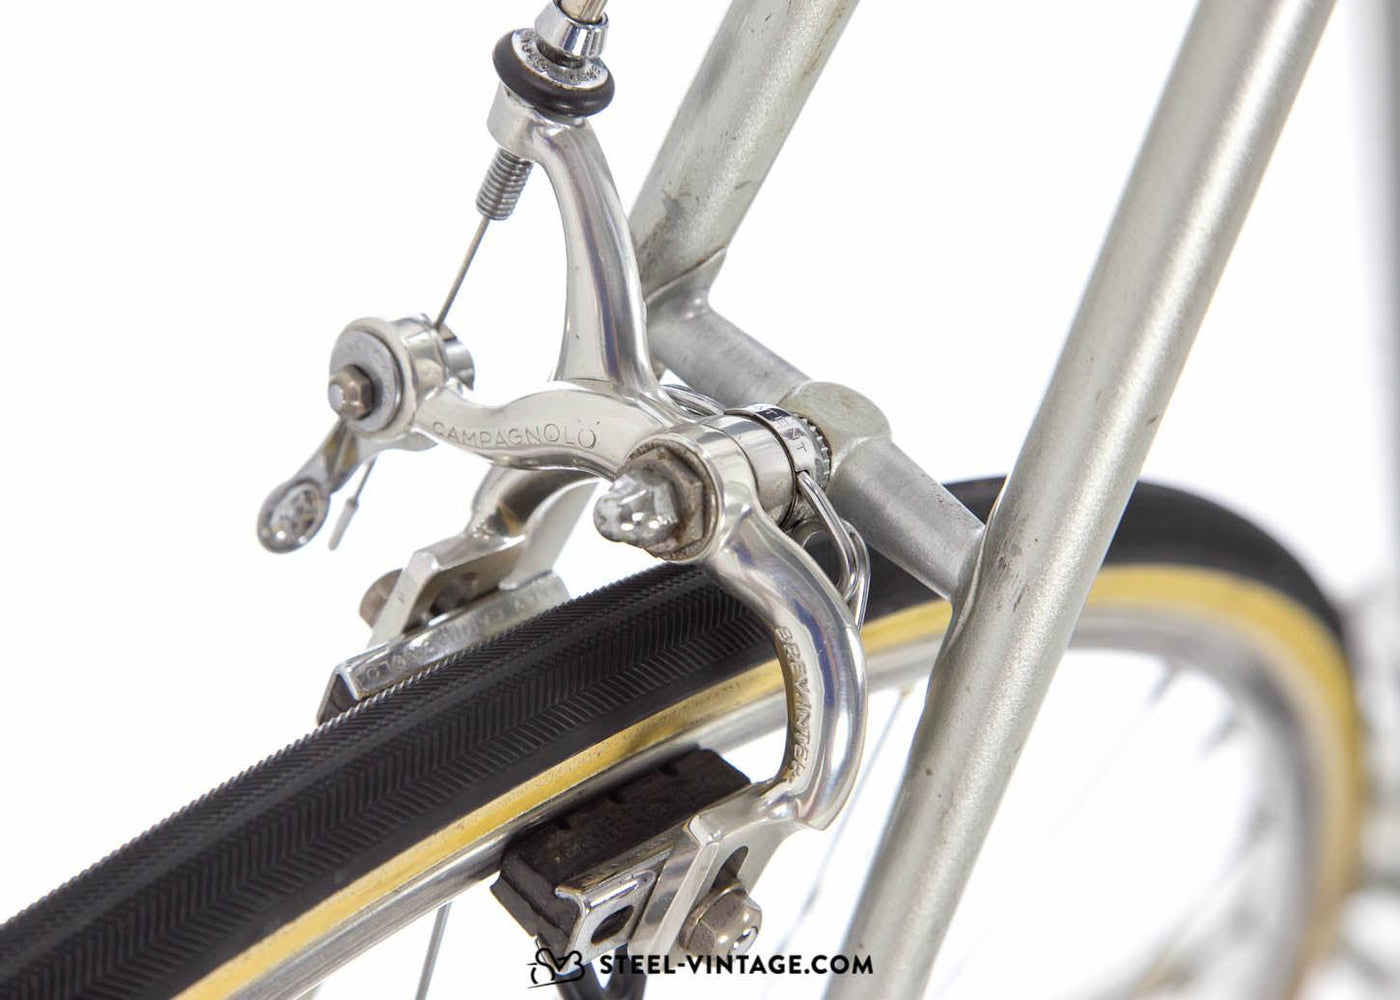 Eddy Merckx Professional 531 Vintage Racing Bike 1981 - Steel Vintage Bikes